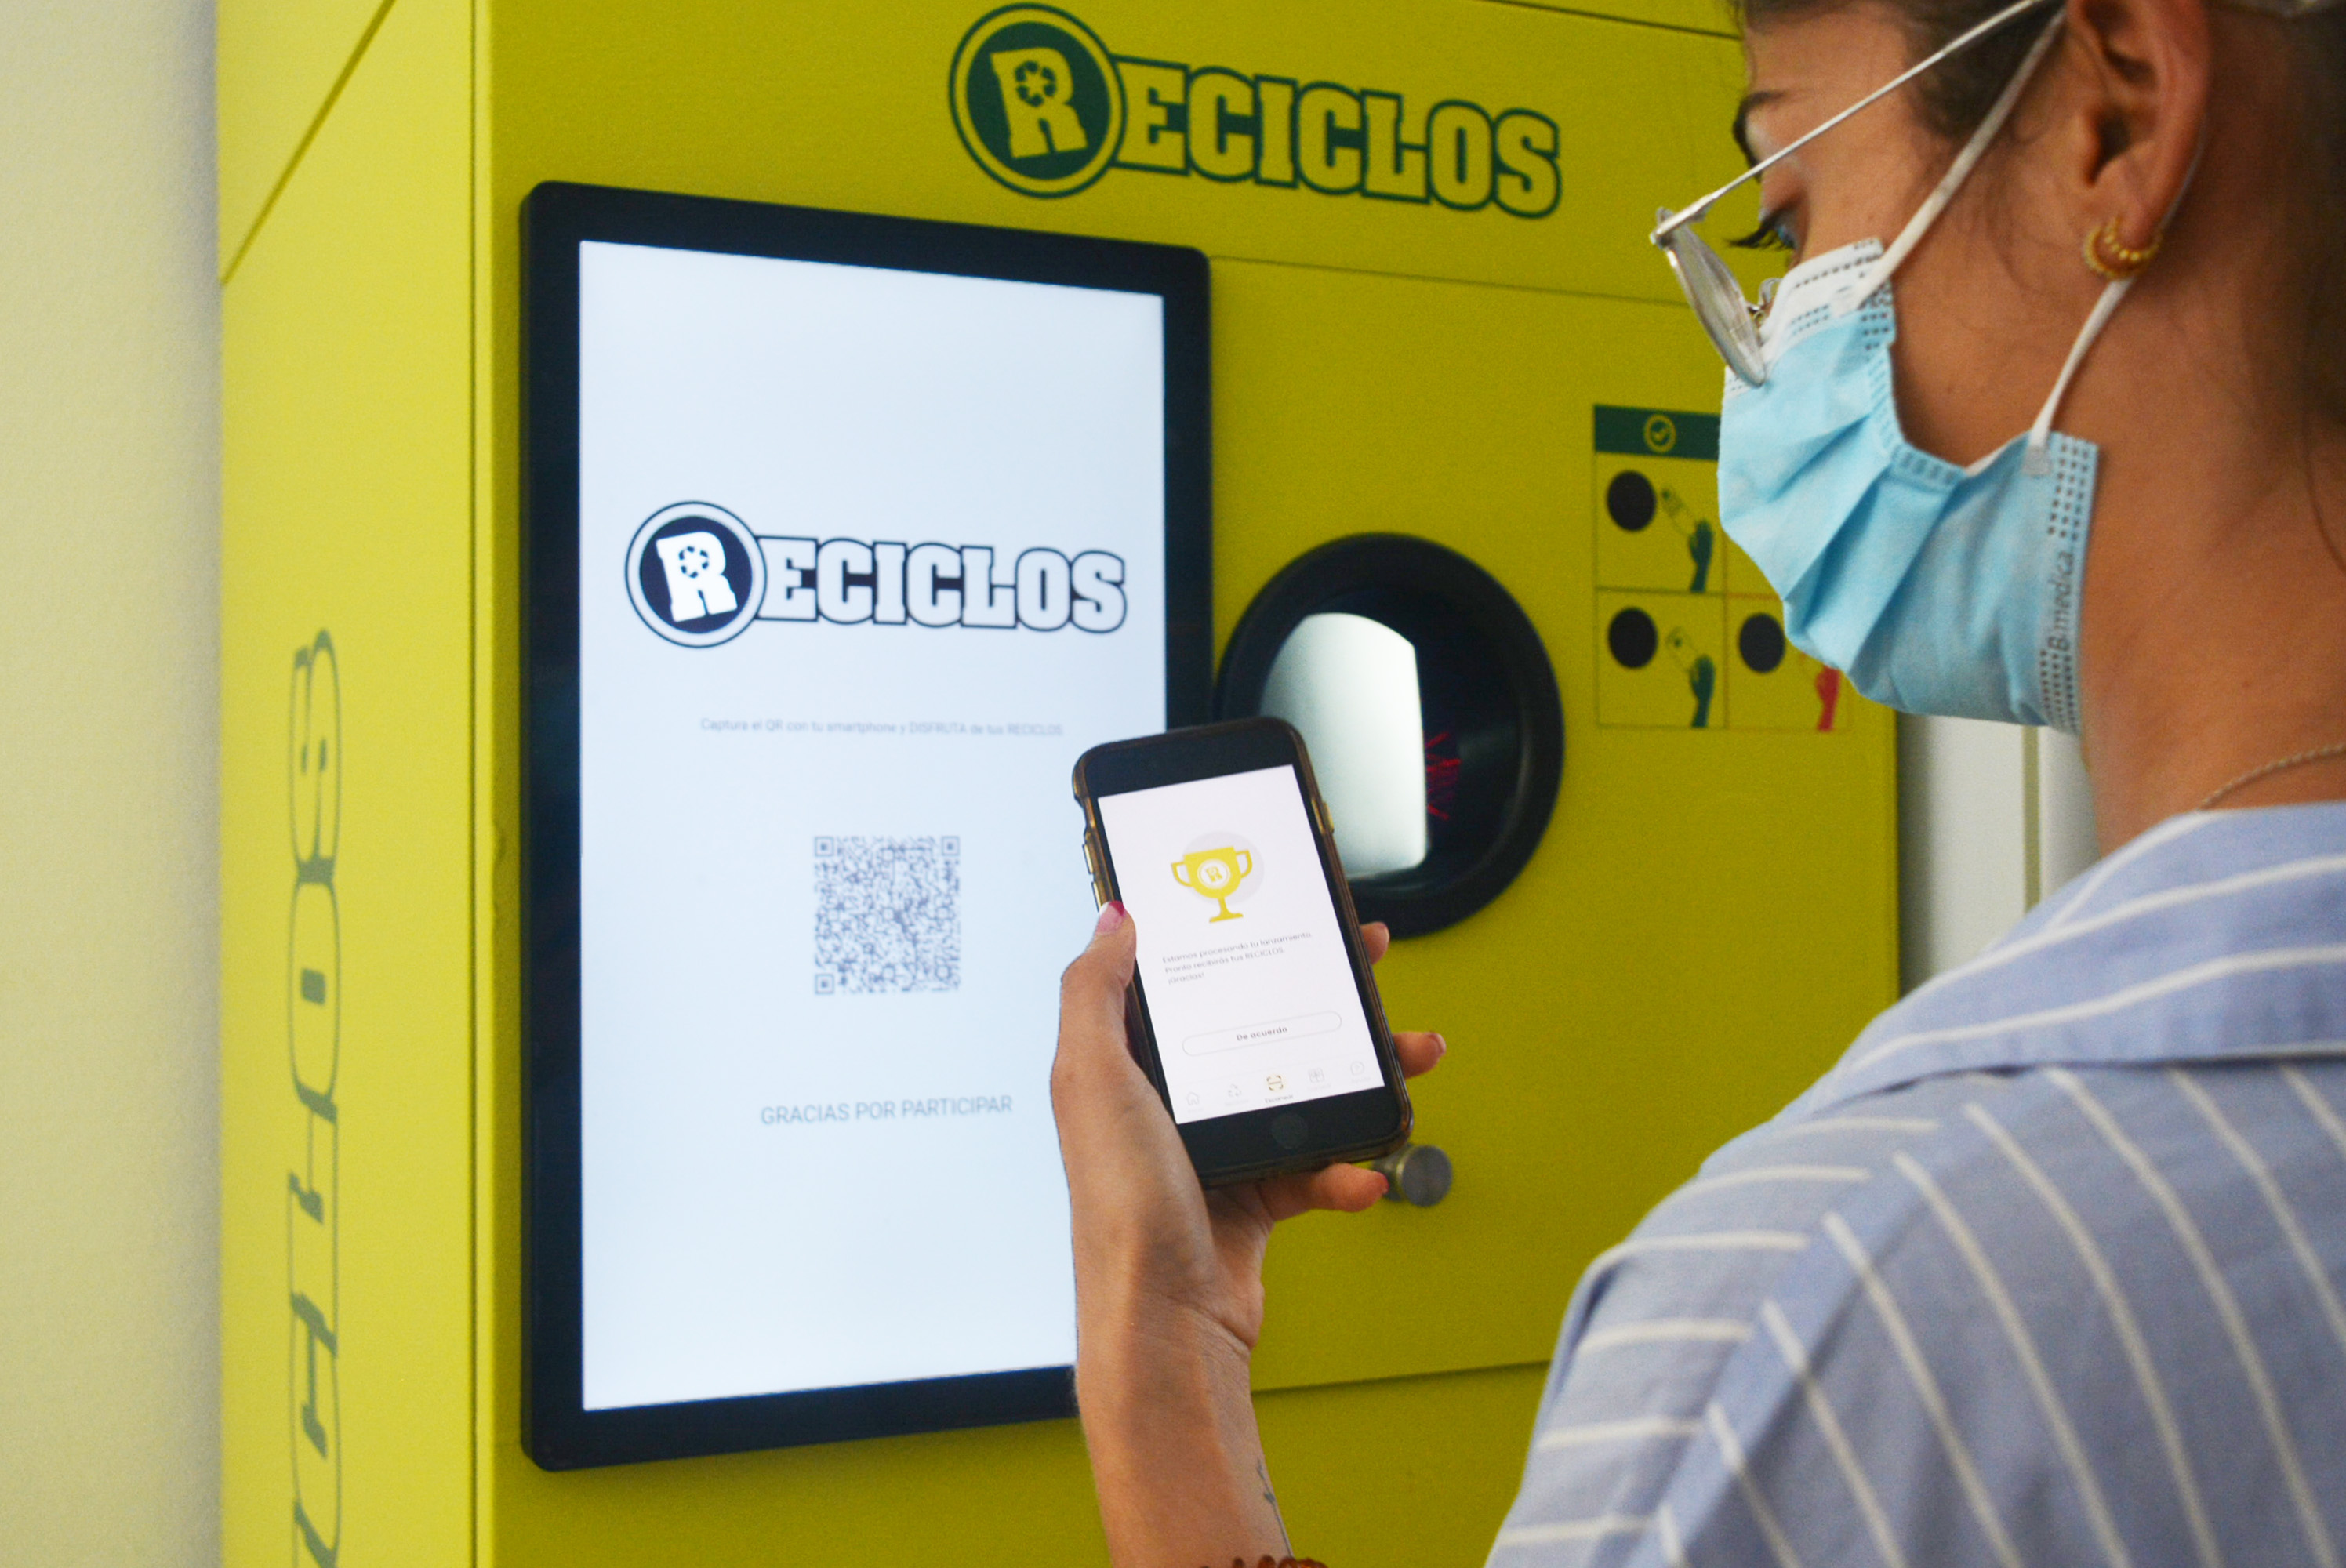 El Hospital Universitario de Torrejón se suma a RECICLOS con la instalación de una máquina que recompensa por reciclar